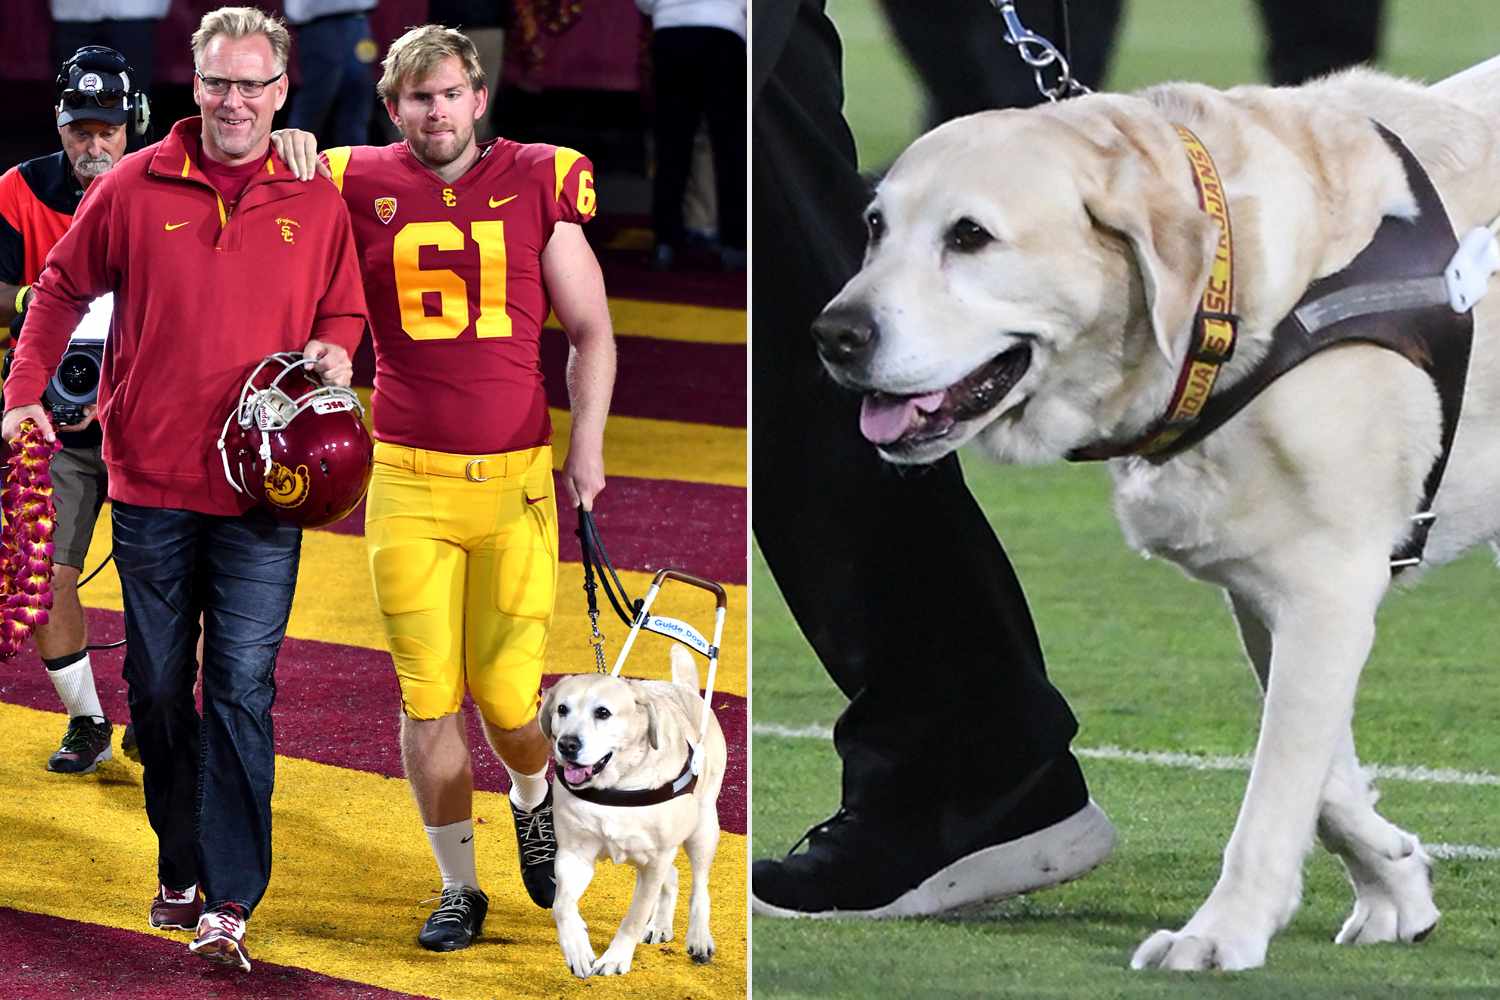 Blind Former USC Player Jake Olson Mourns Death of ‘Beloved Guide Dog’ [Video]